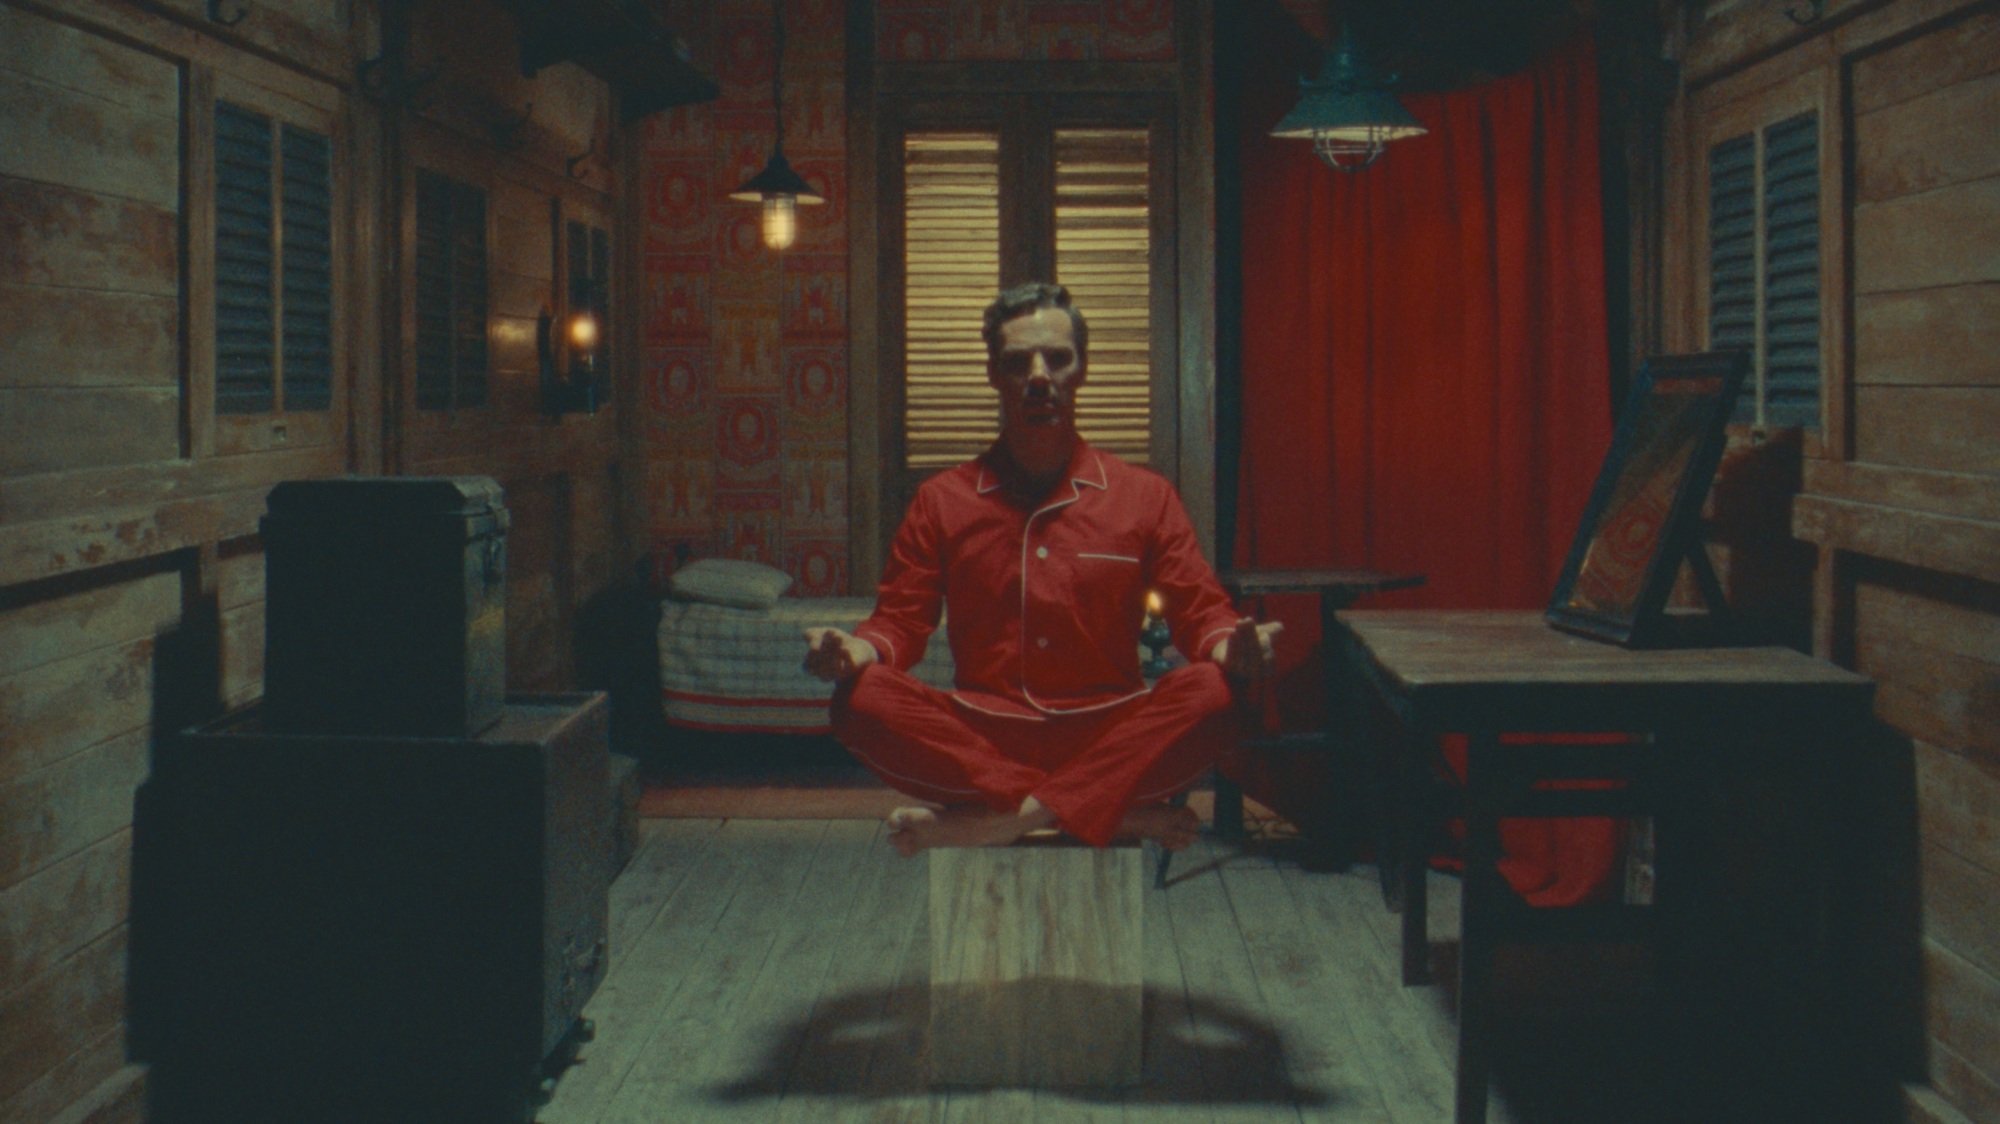 Un homme en pyjama rouge lévite du sol dans une petite pièce.